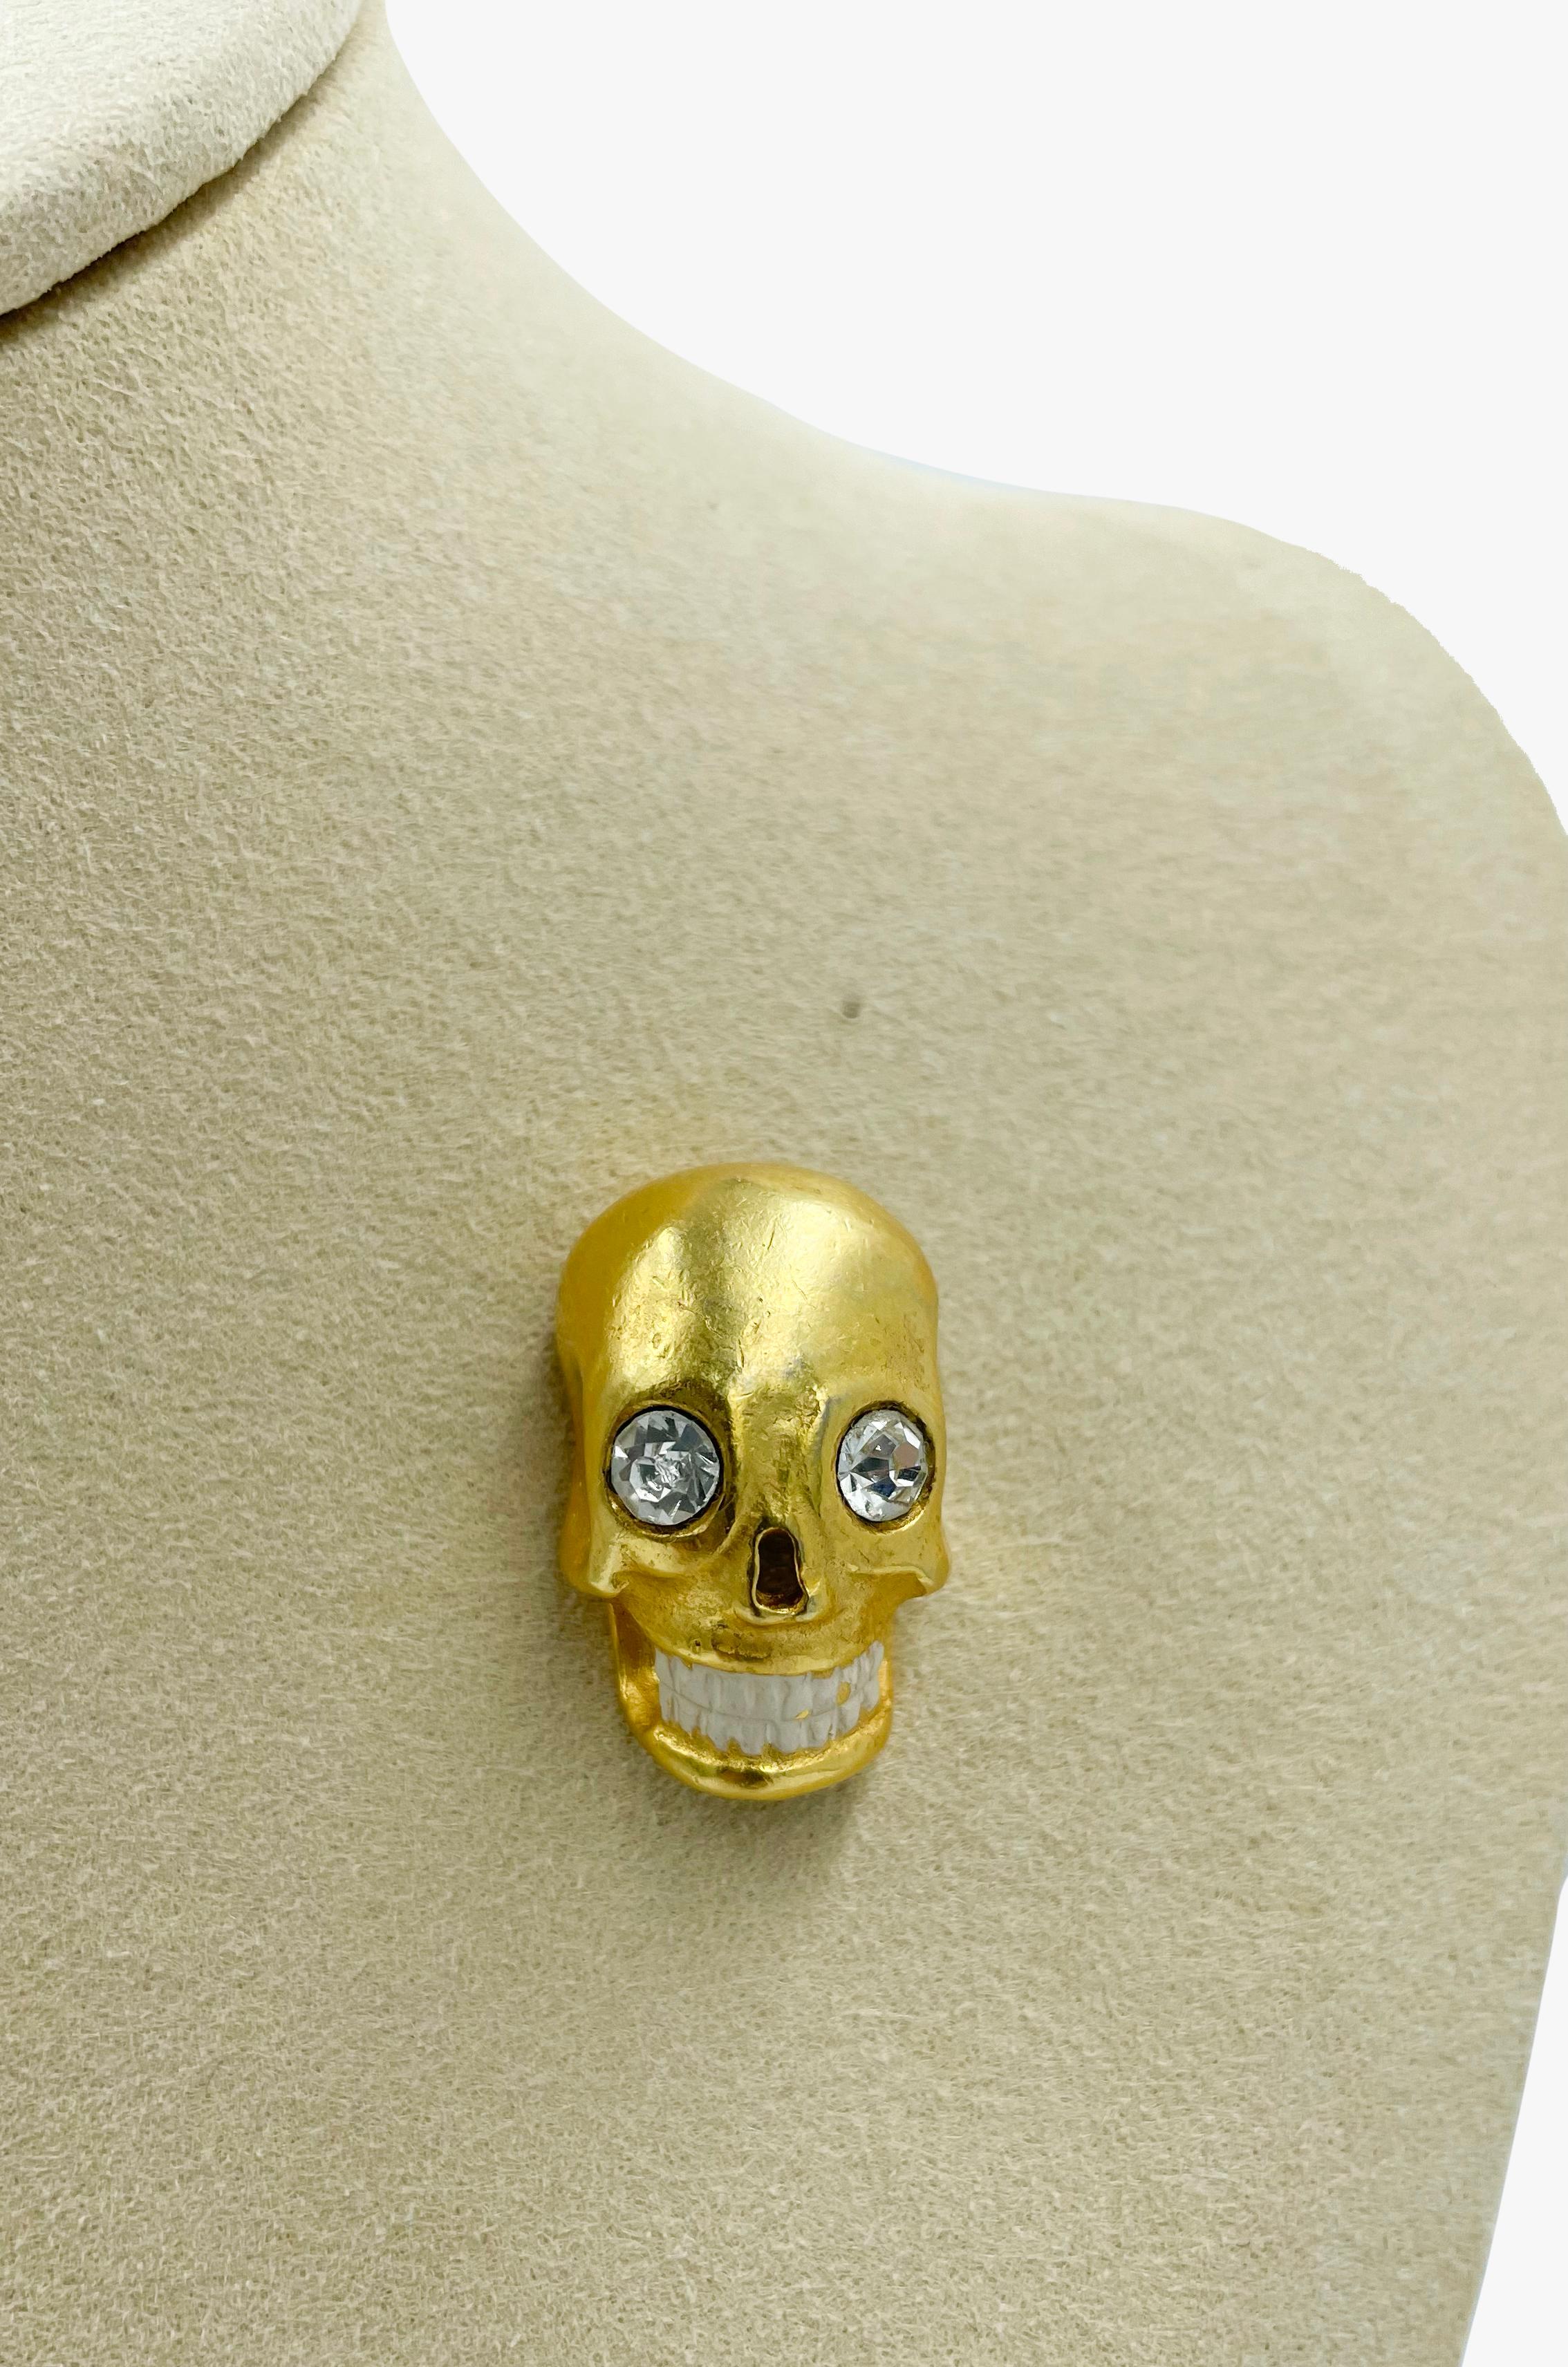 Chloe goldfarbene Brosche in Form eines Totenkopfes mit Strasssteinen
Unterzeichnet
Abmessungen - 2,5 х 1 cm
Zustand - sehr gut
........Zusätzliche Informationen ........

- Das Foto kann sich aufgrund der Beleuchtung während der Aufnahme oder der